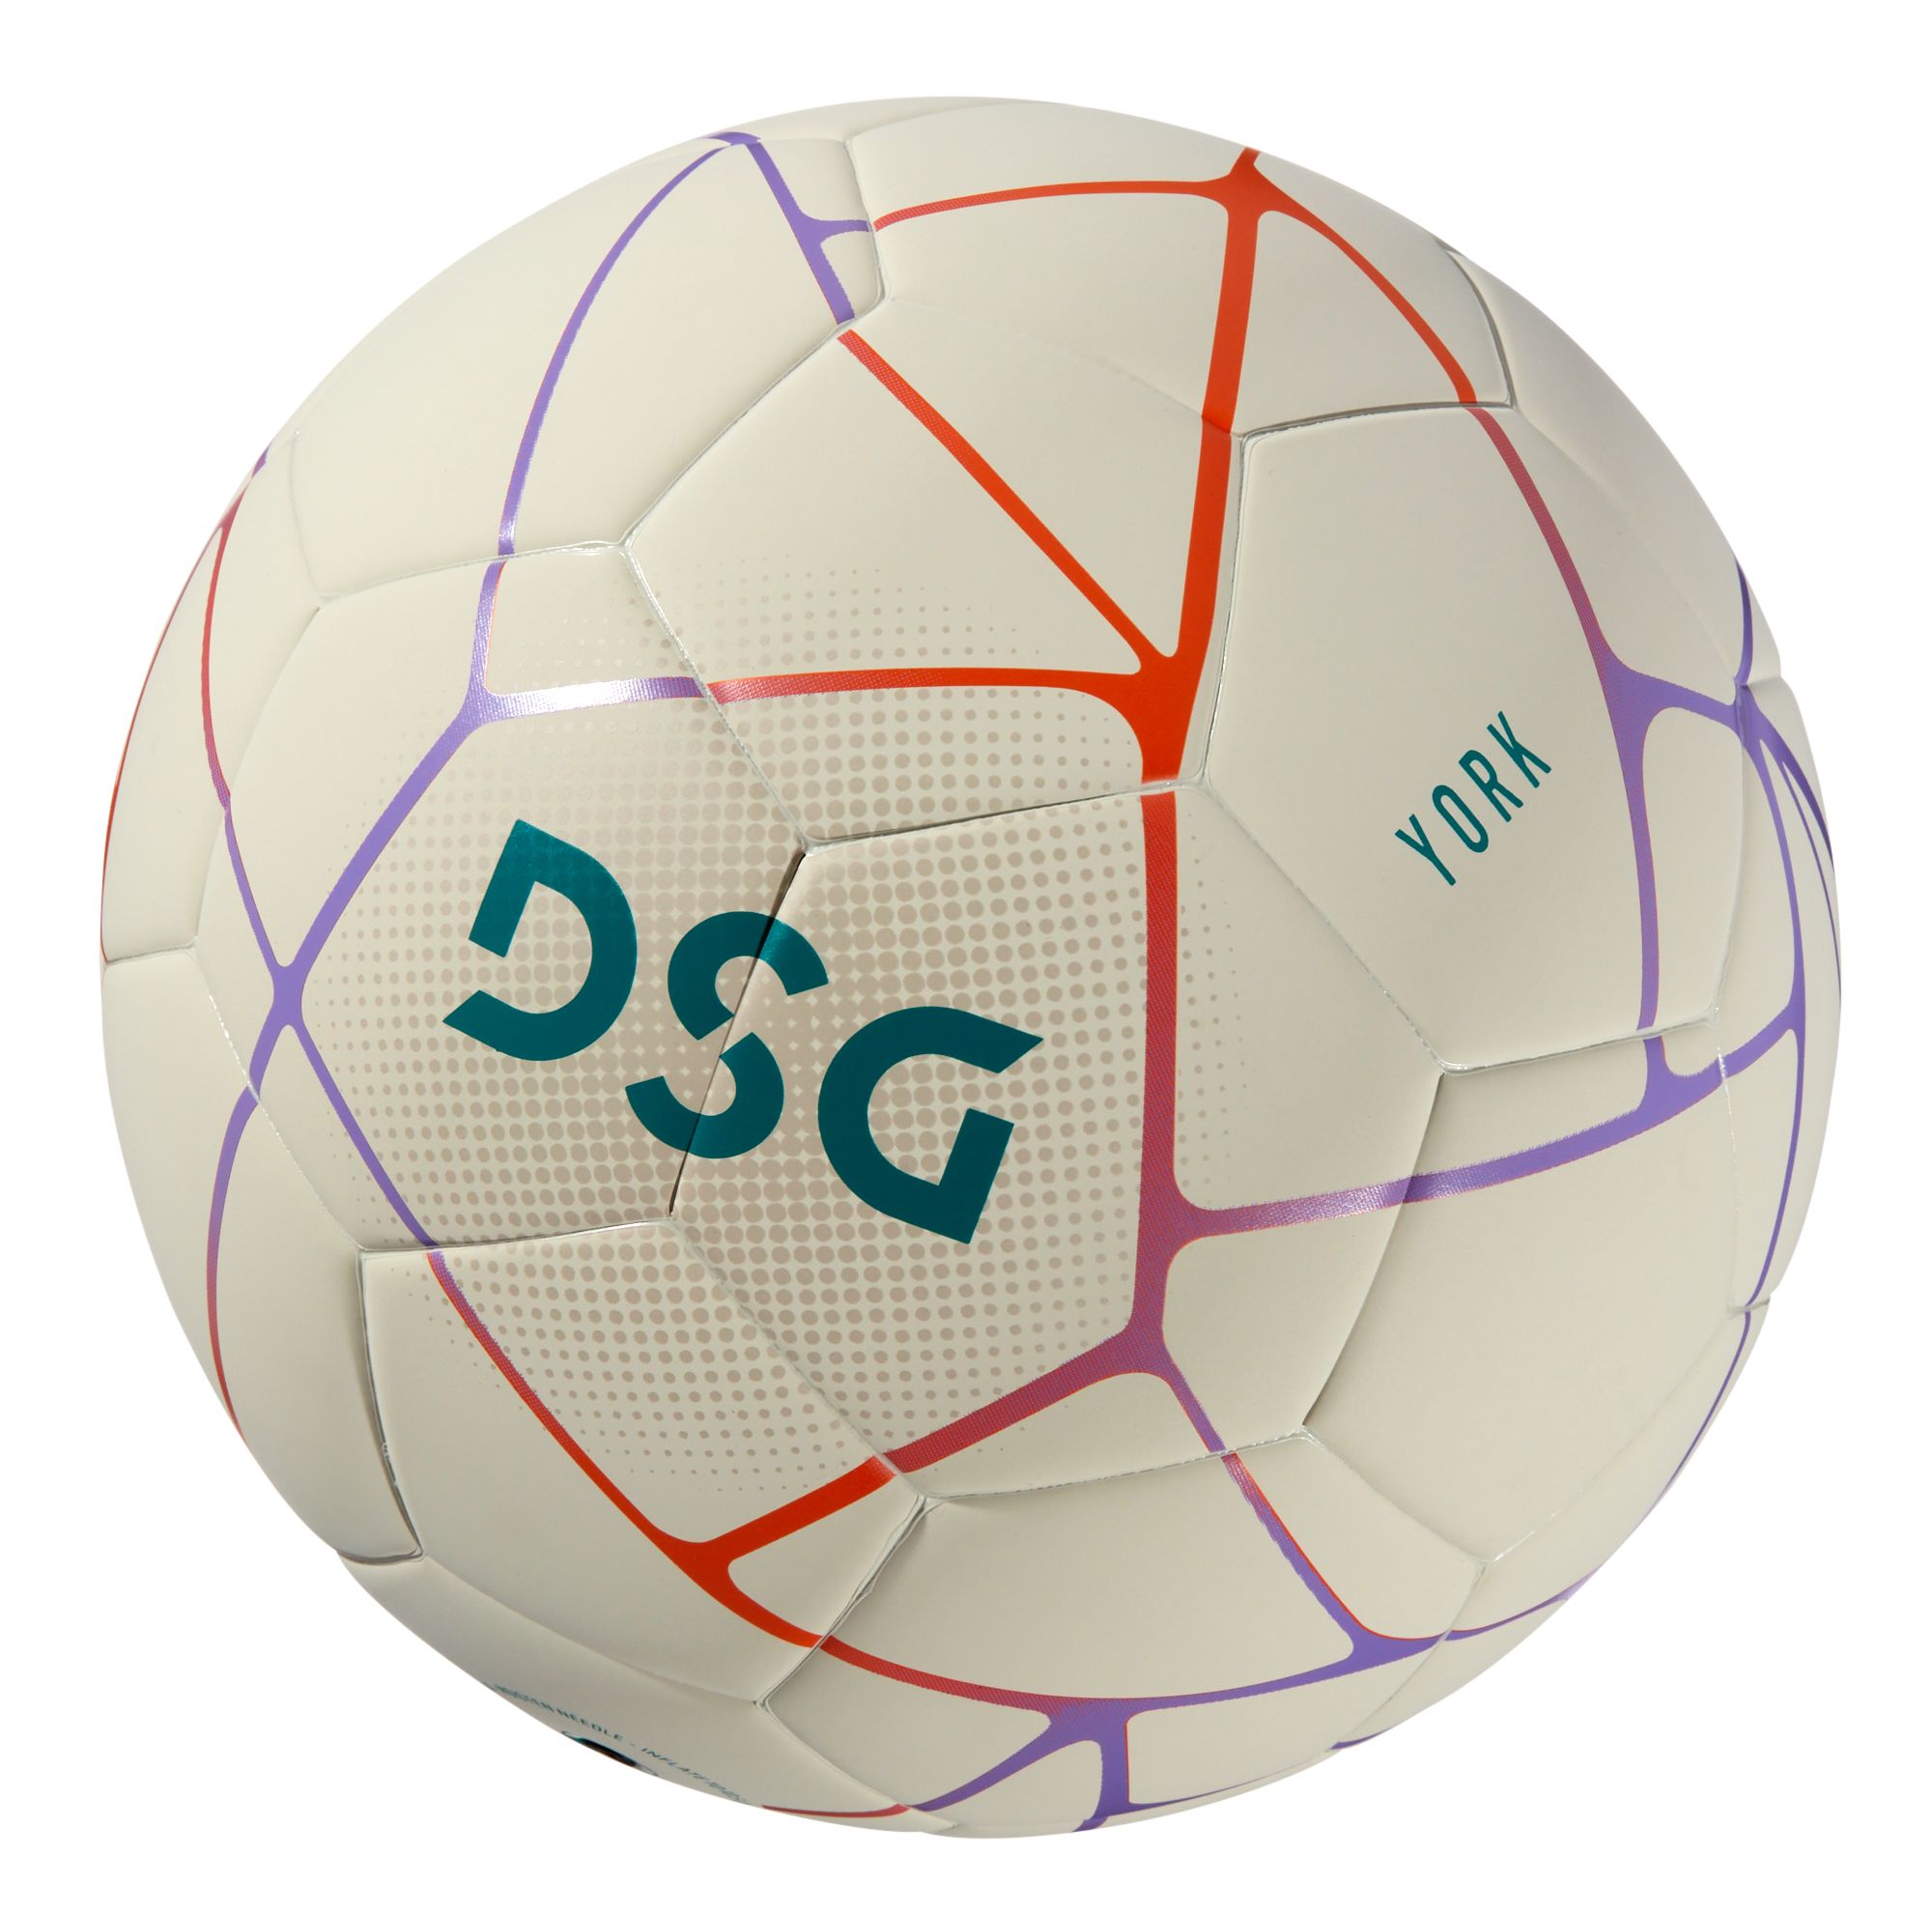 DSG York Soccer Ball